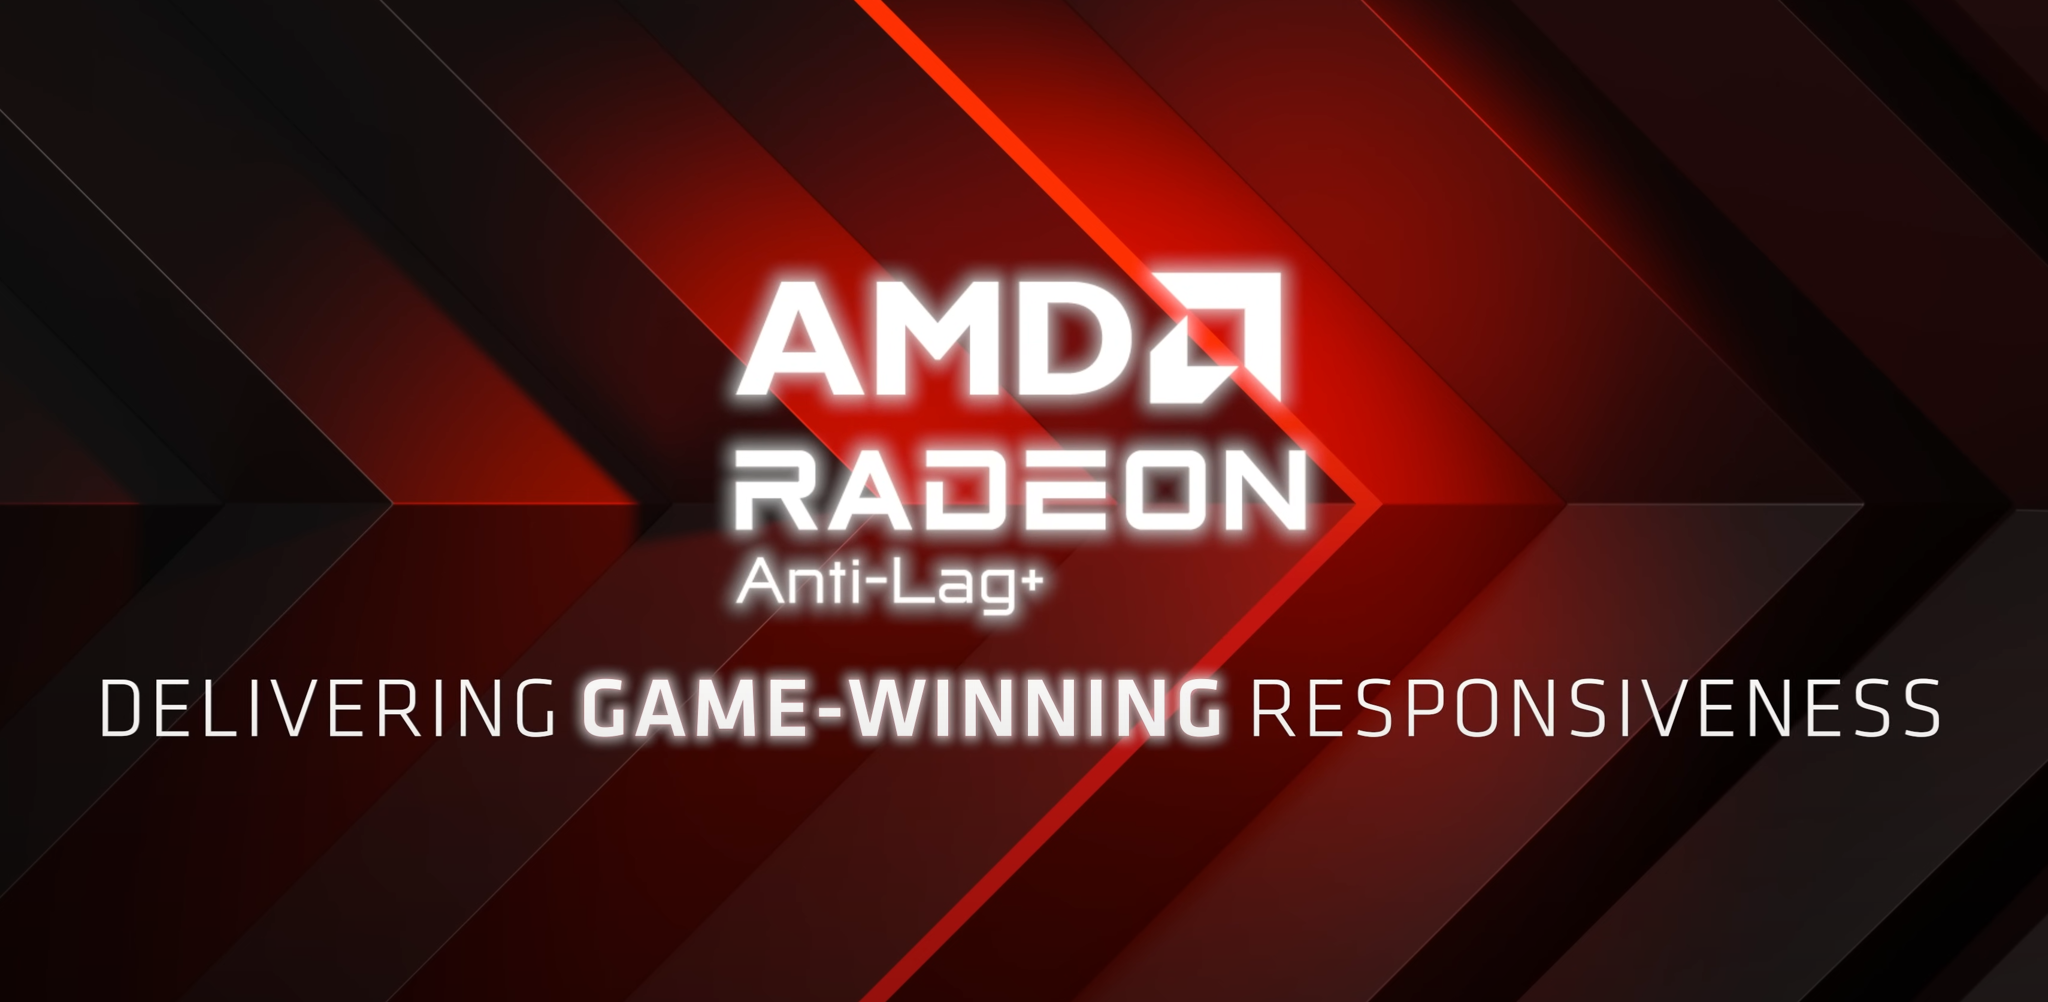 Không riêng gì Counter-Strike 2, AMD Anti-Lag+ cũng có thể khiến game thủ “ăn gậy” trong những trò eSports khác